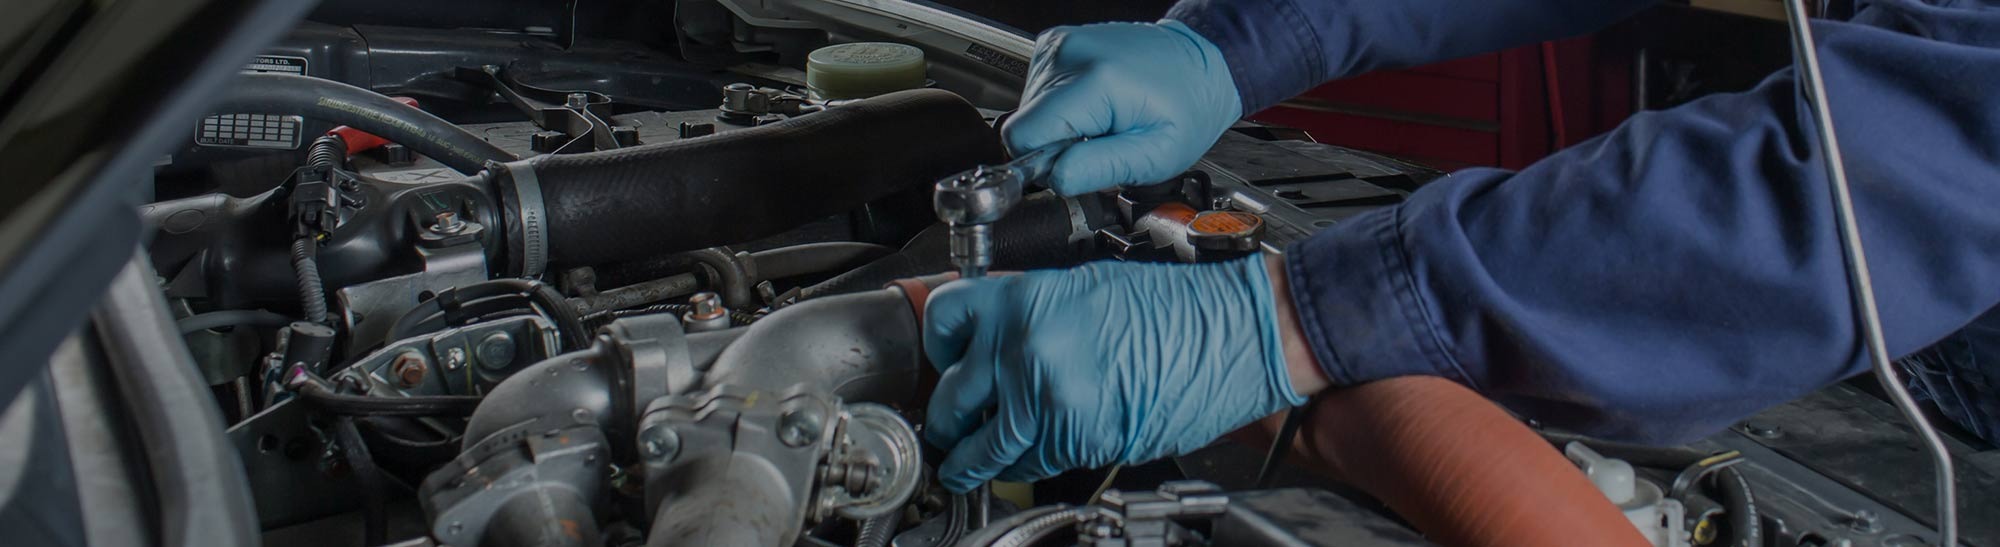 Parts & Repair at Fraternity Subaru